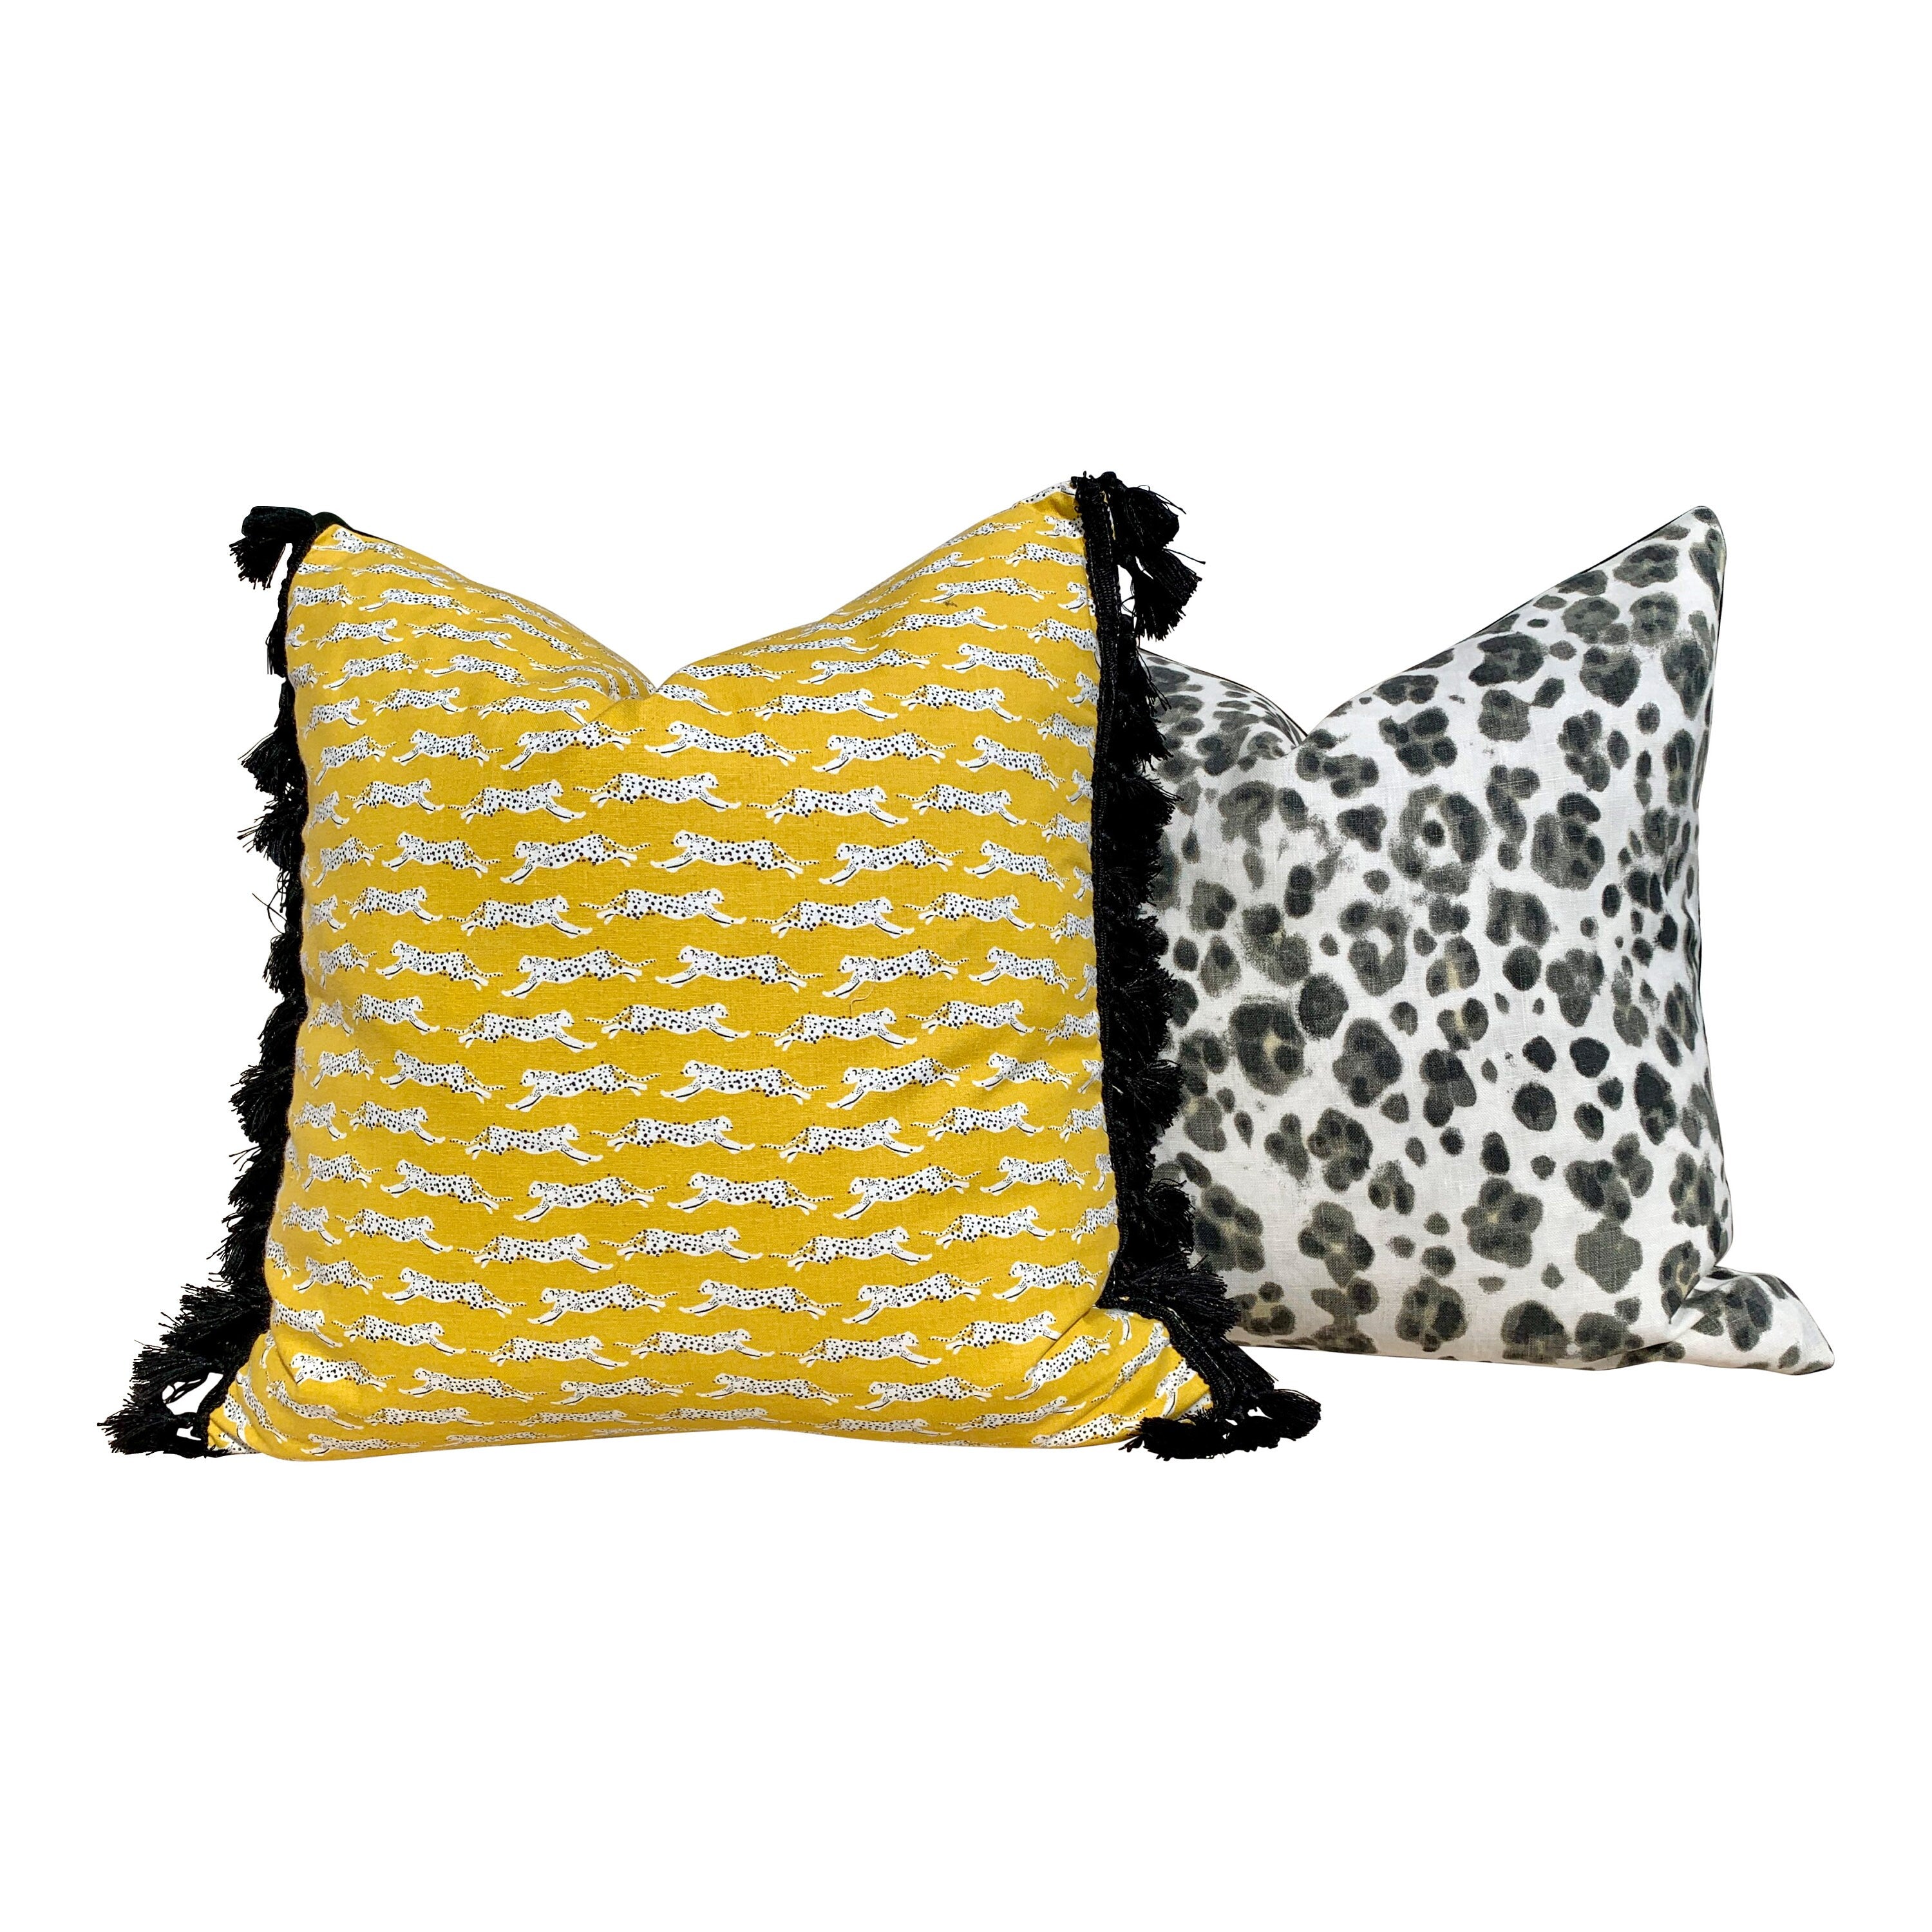 Panthera Linen Pillow Cover in Charcoal. Animal Skin Lumbar Pillow, accent pillow sham, decorative pillow throw, extra long lumbar pillow